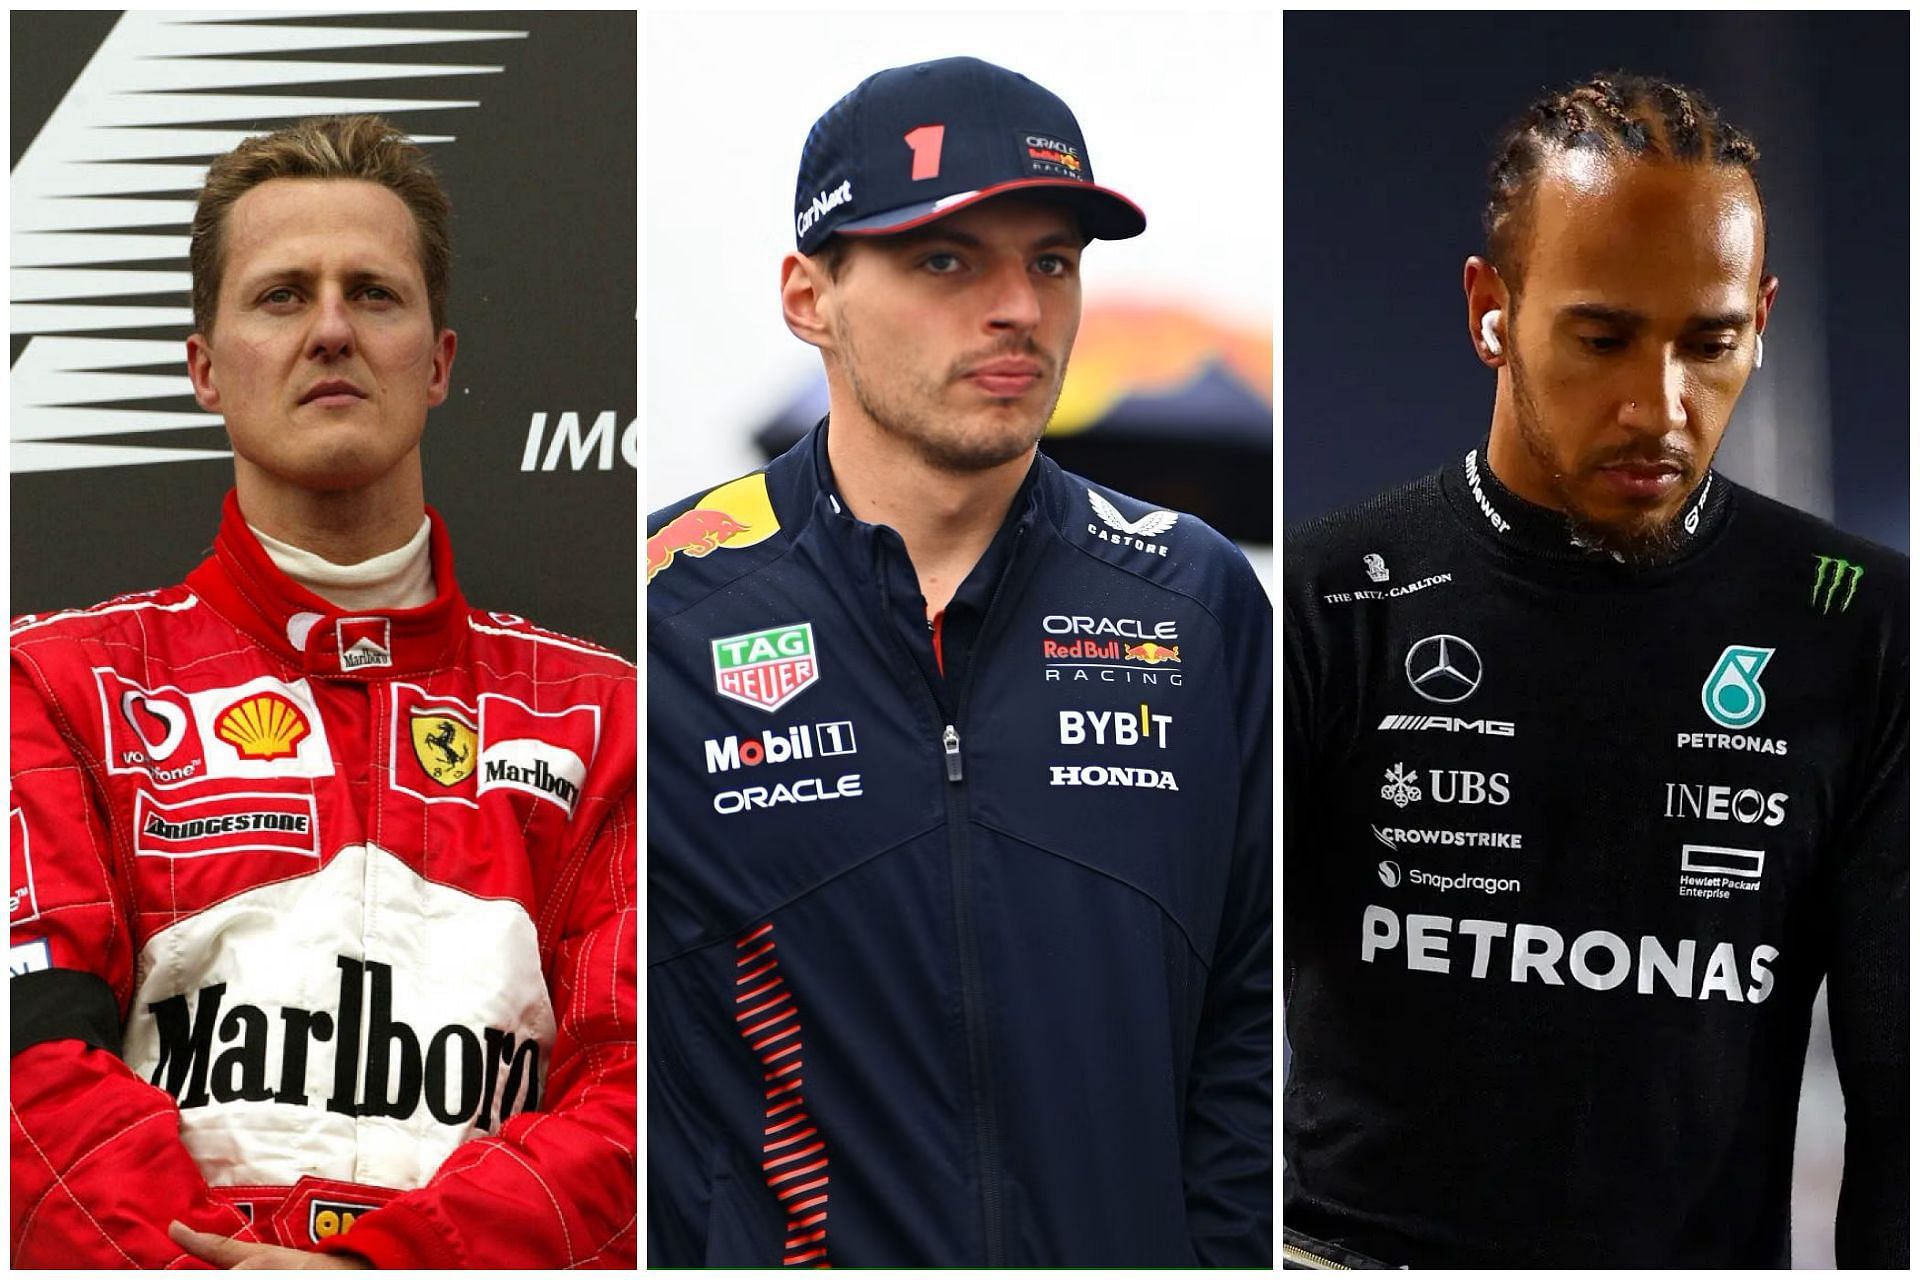 Michael Schumacher (L), Max Verstappen (C), and Lewis Hamilton (R) (Collage via Sportskeeda)